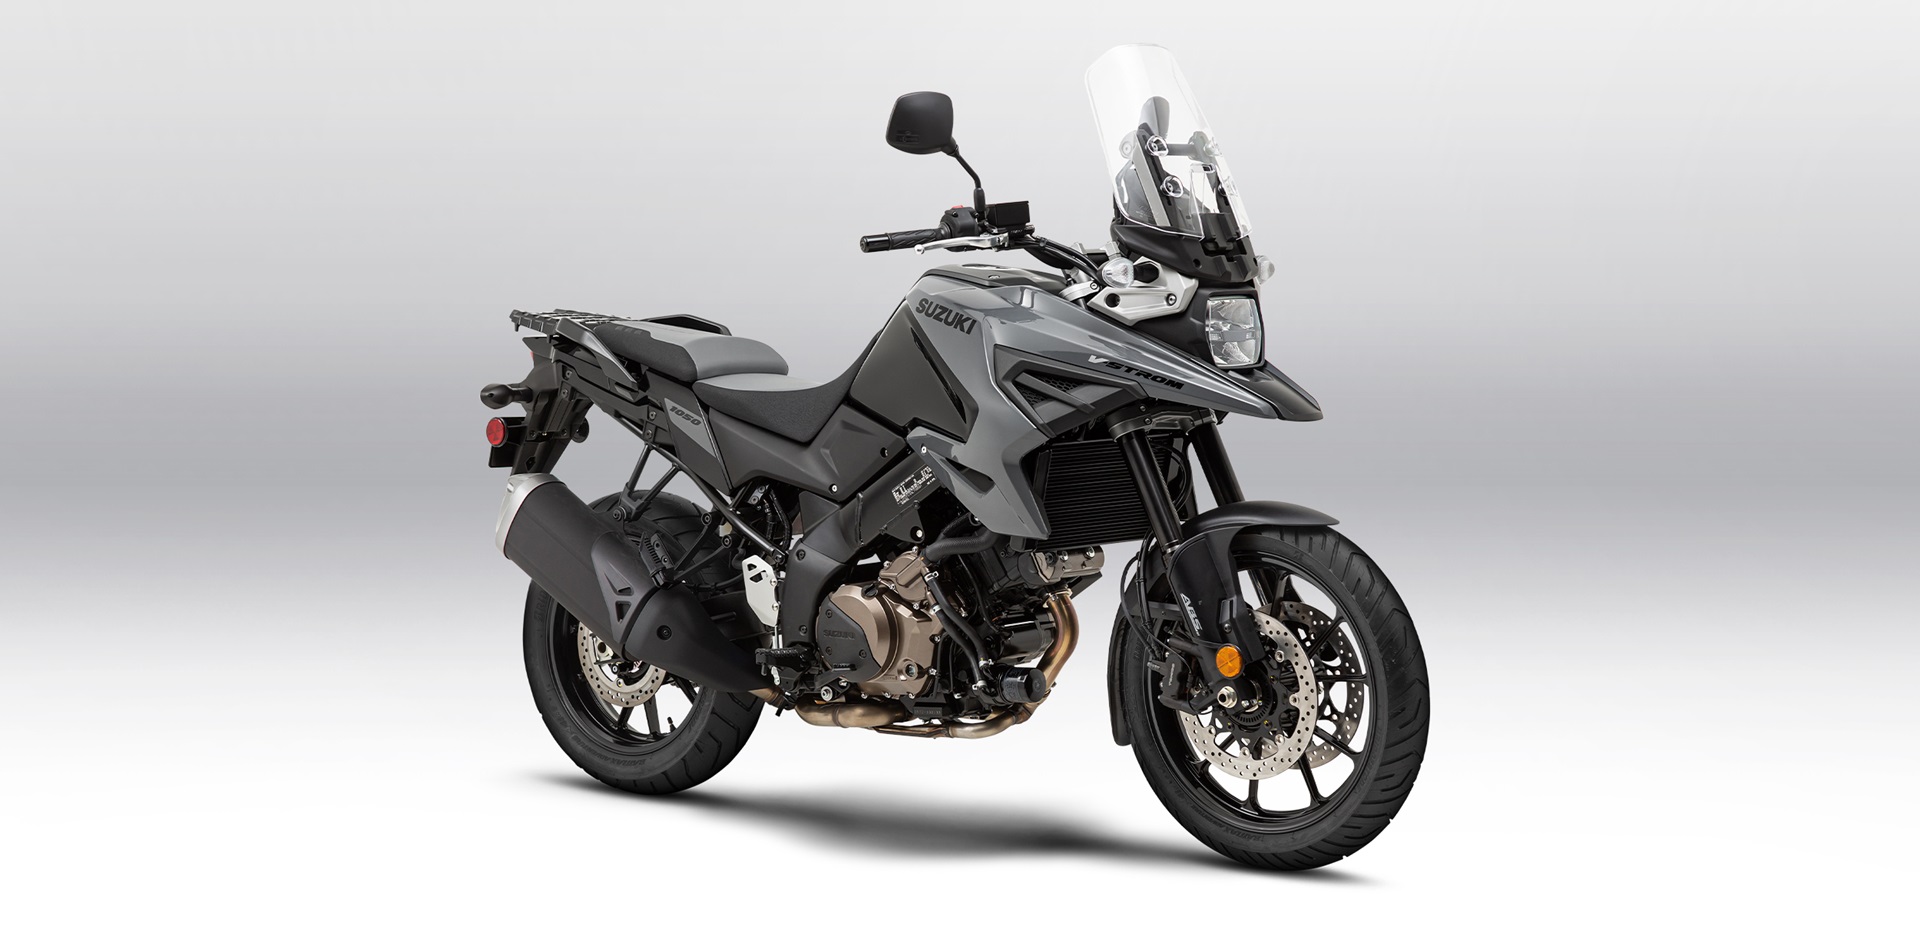 Suzuki VStrom 1050 motorcycle for sale